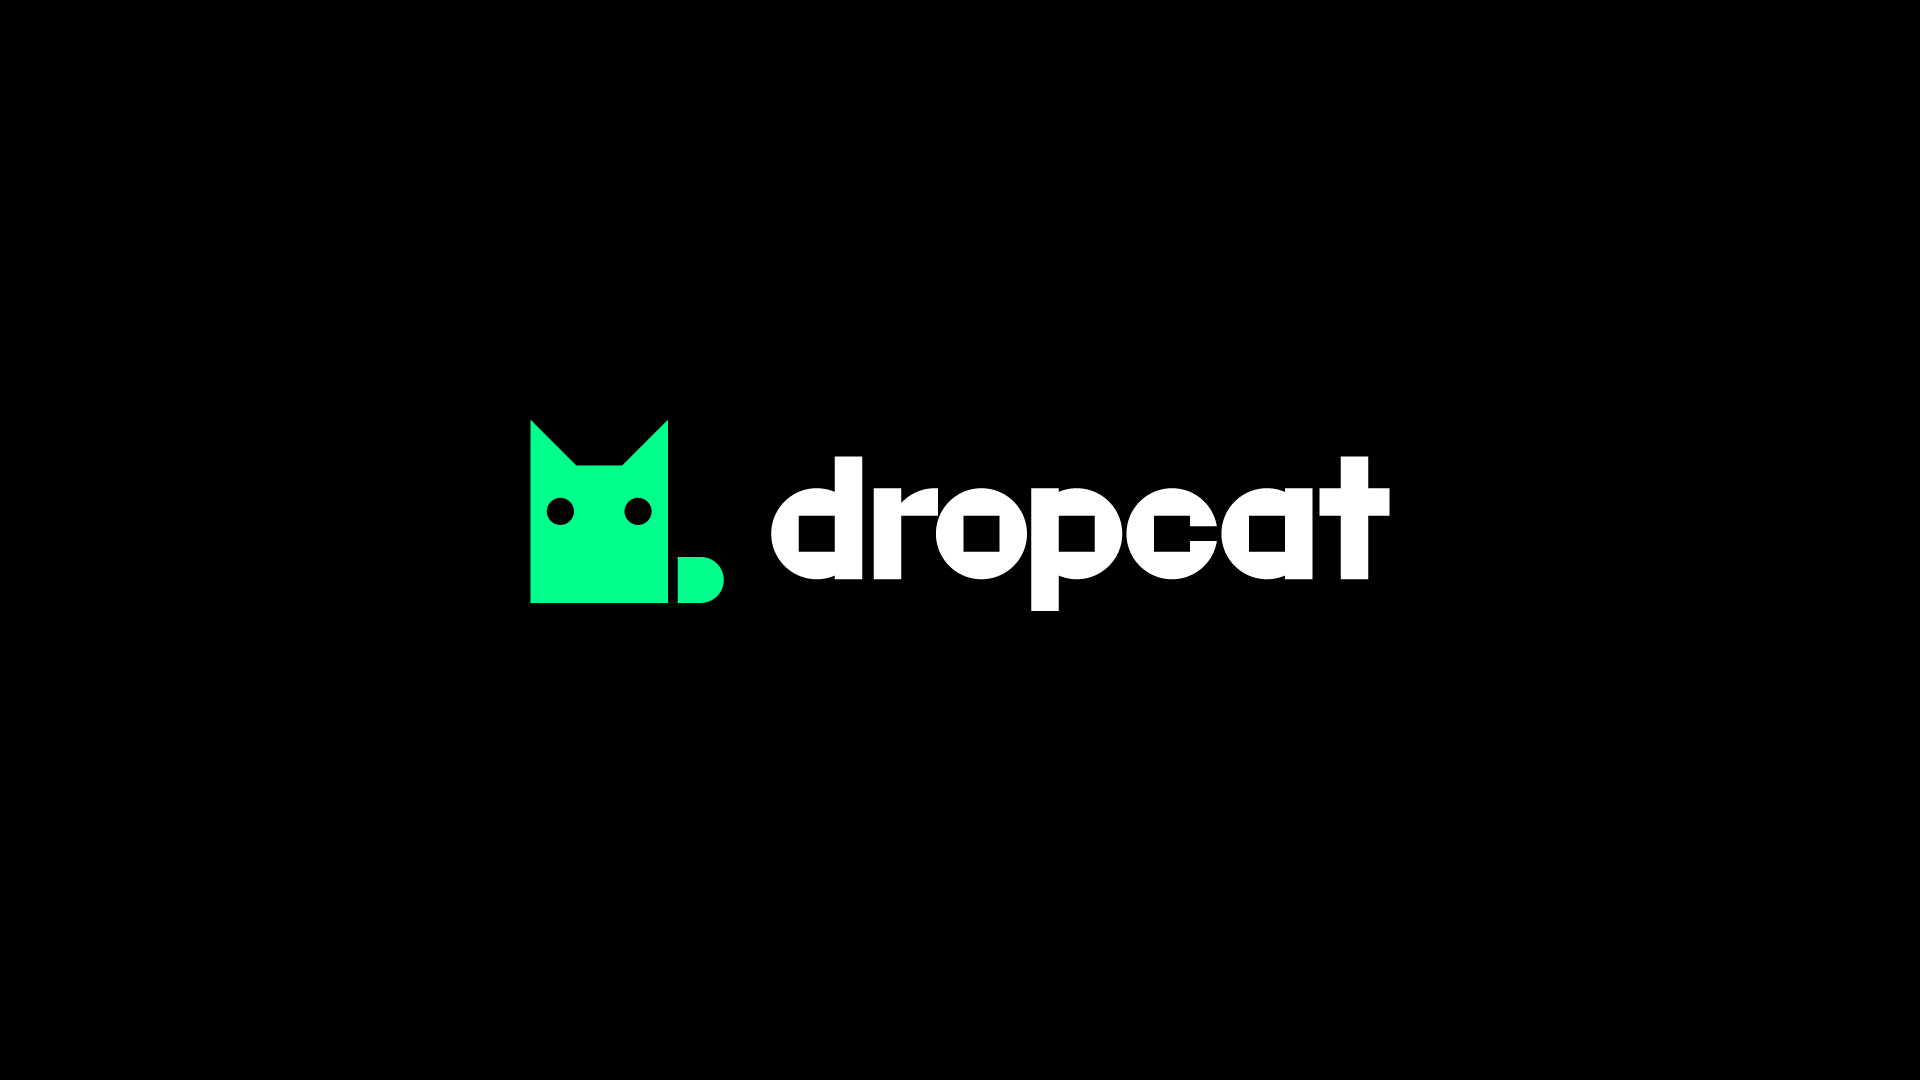 Dropcat